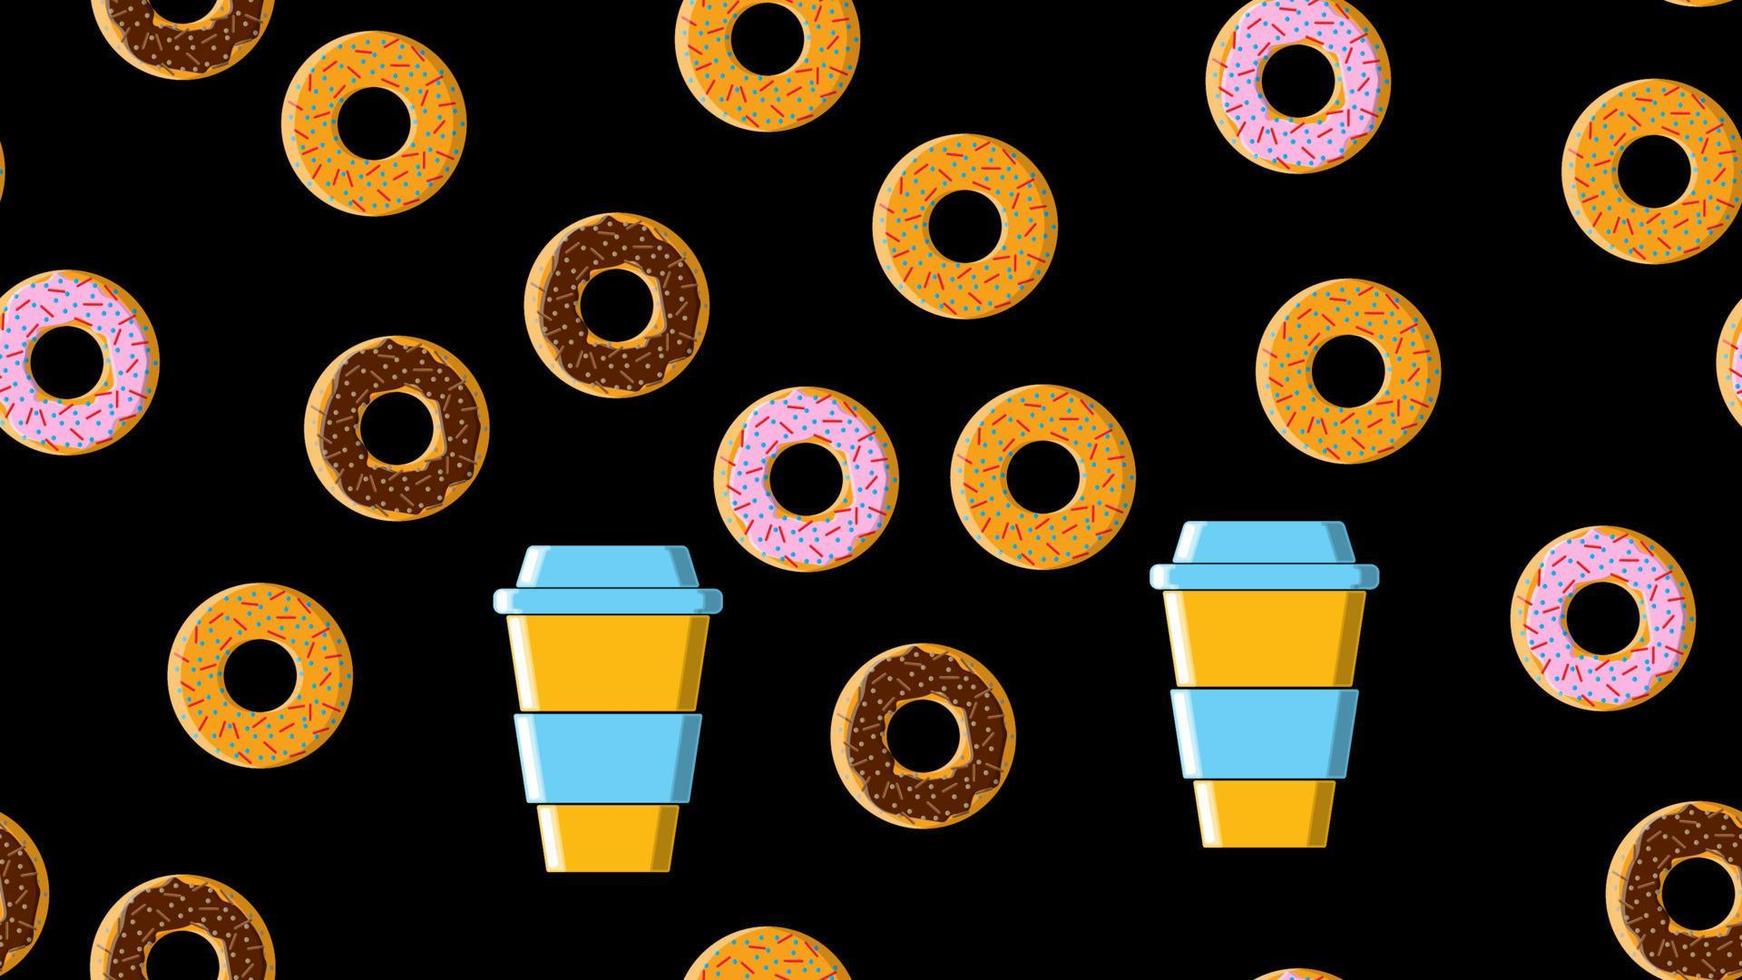 sömlös mönster, textur från annorlunda runda ljuv gott varm munkar med socker i kola choklad och en kopp av varm snabb ta ut stark kaffe på en svart bakgrund. vektor illustration